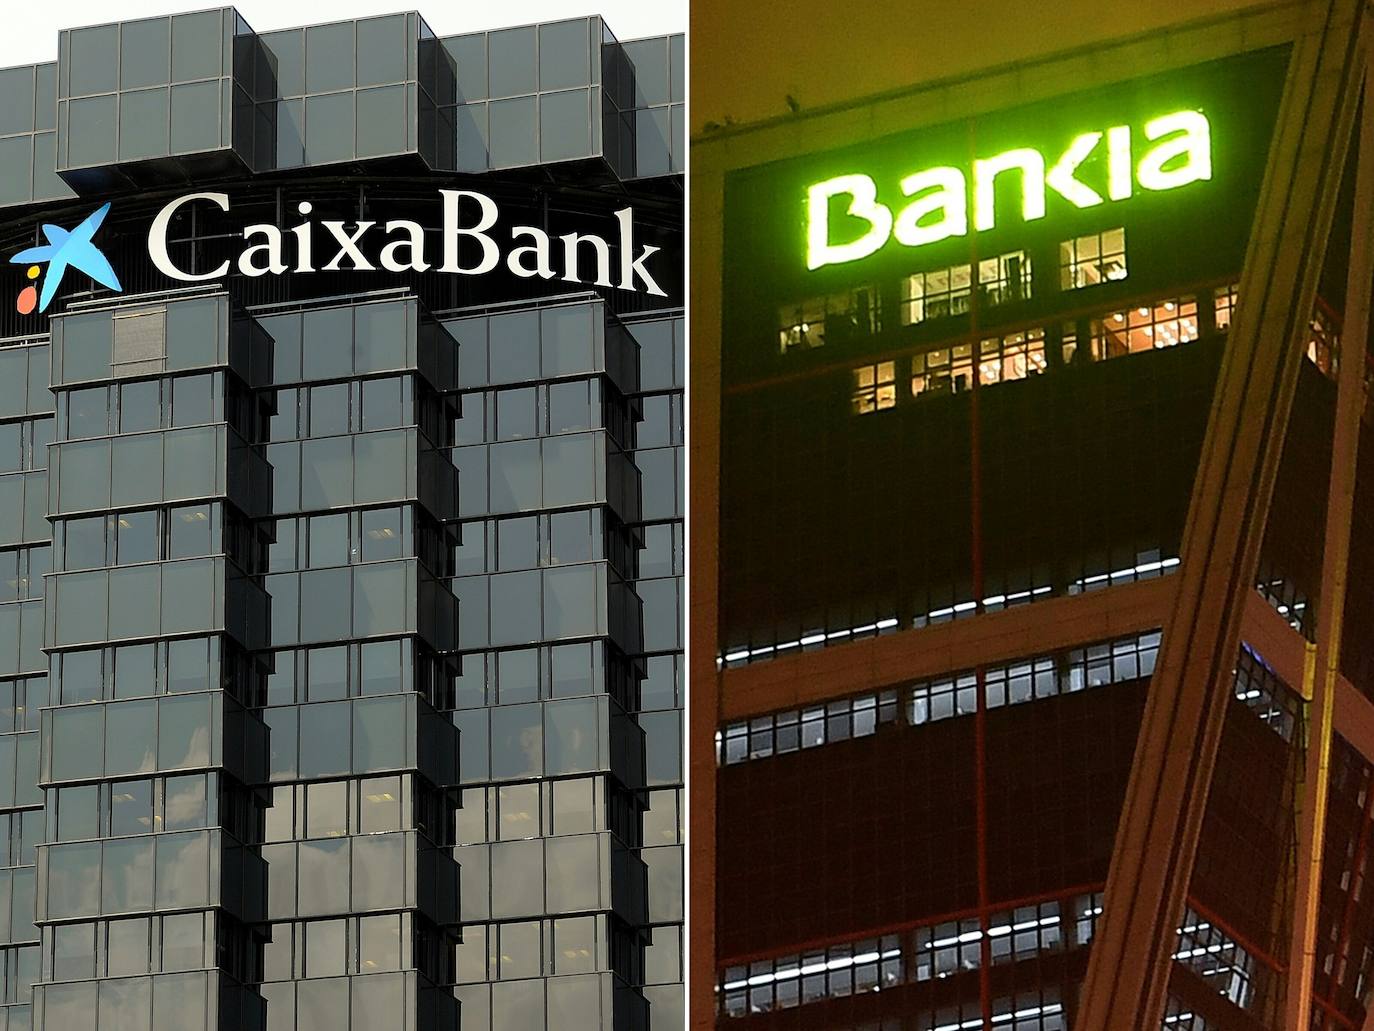 Las sedes de CaixaBank y Bankia 